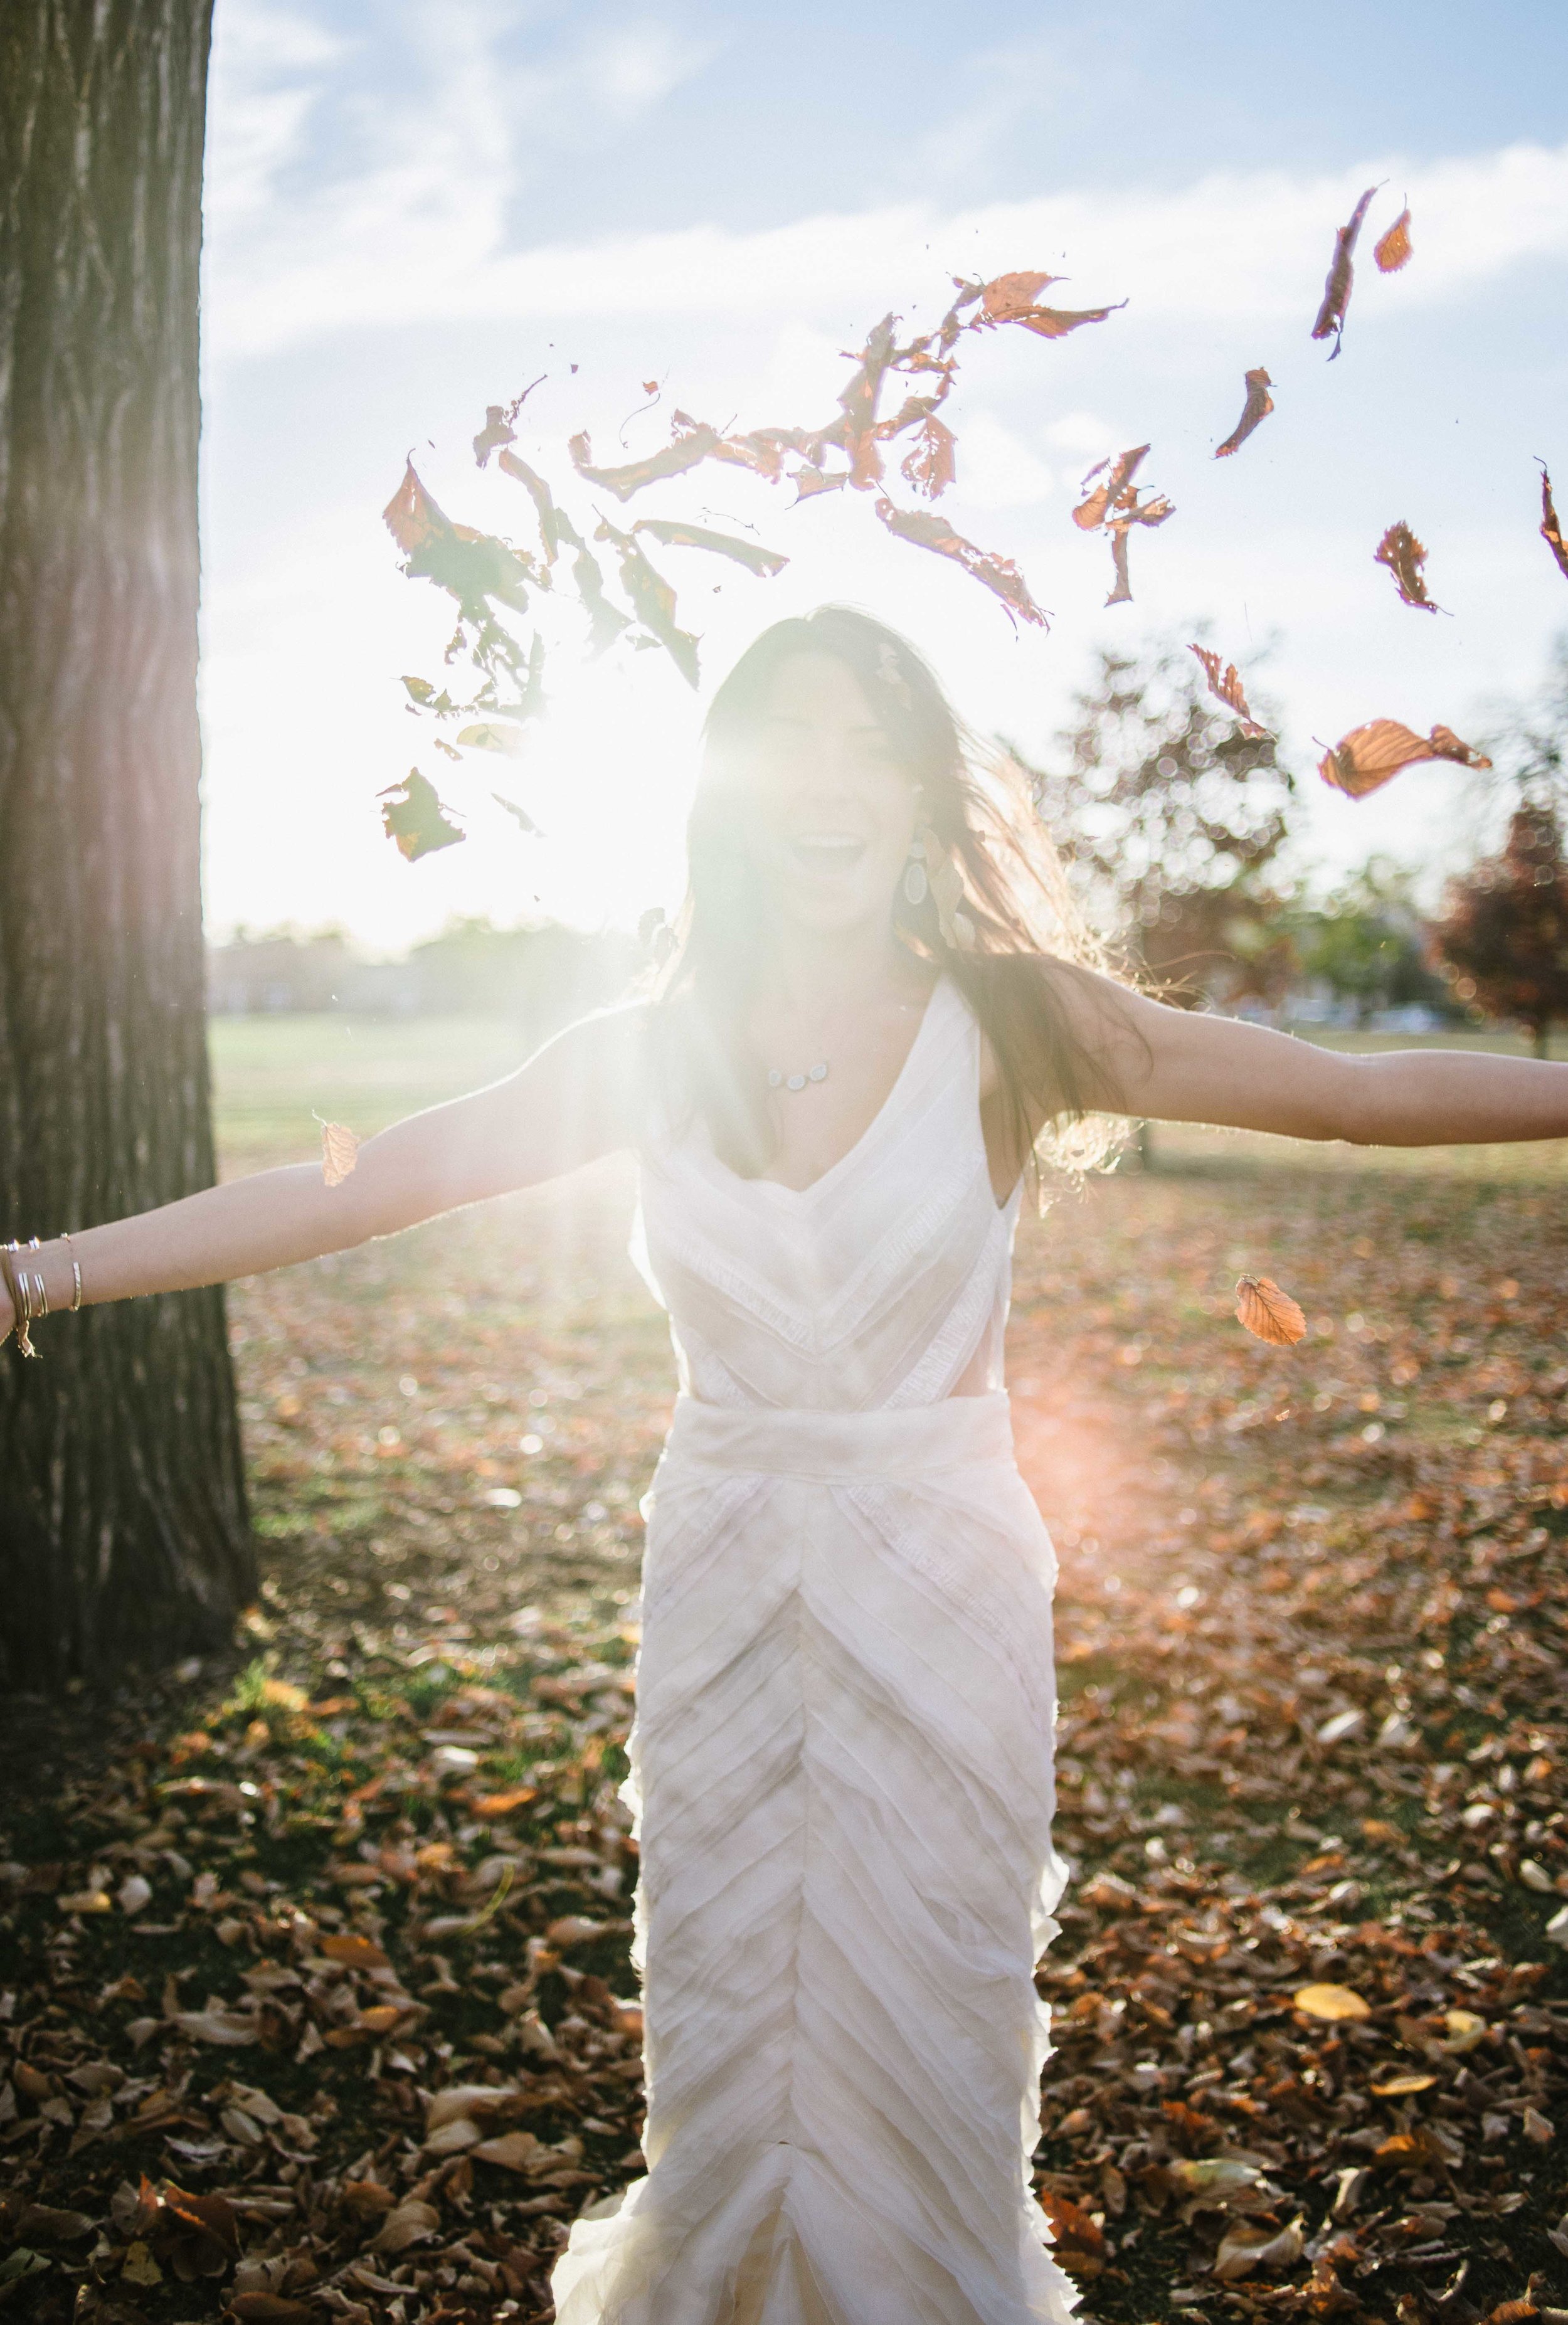  Fall Wedding Inspiration | J. Mendel "Zoe" | available at Little White Dress Bridal Shop in Denver | Photography: Kelly Leggett 